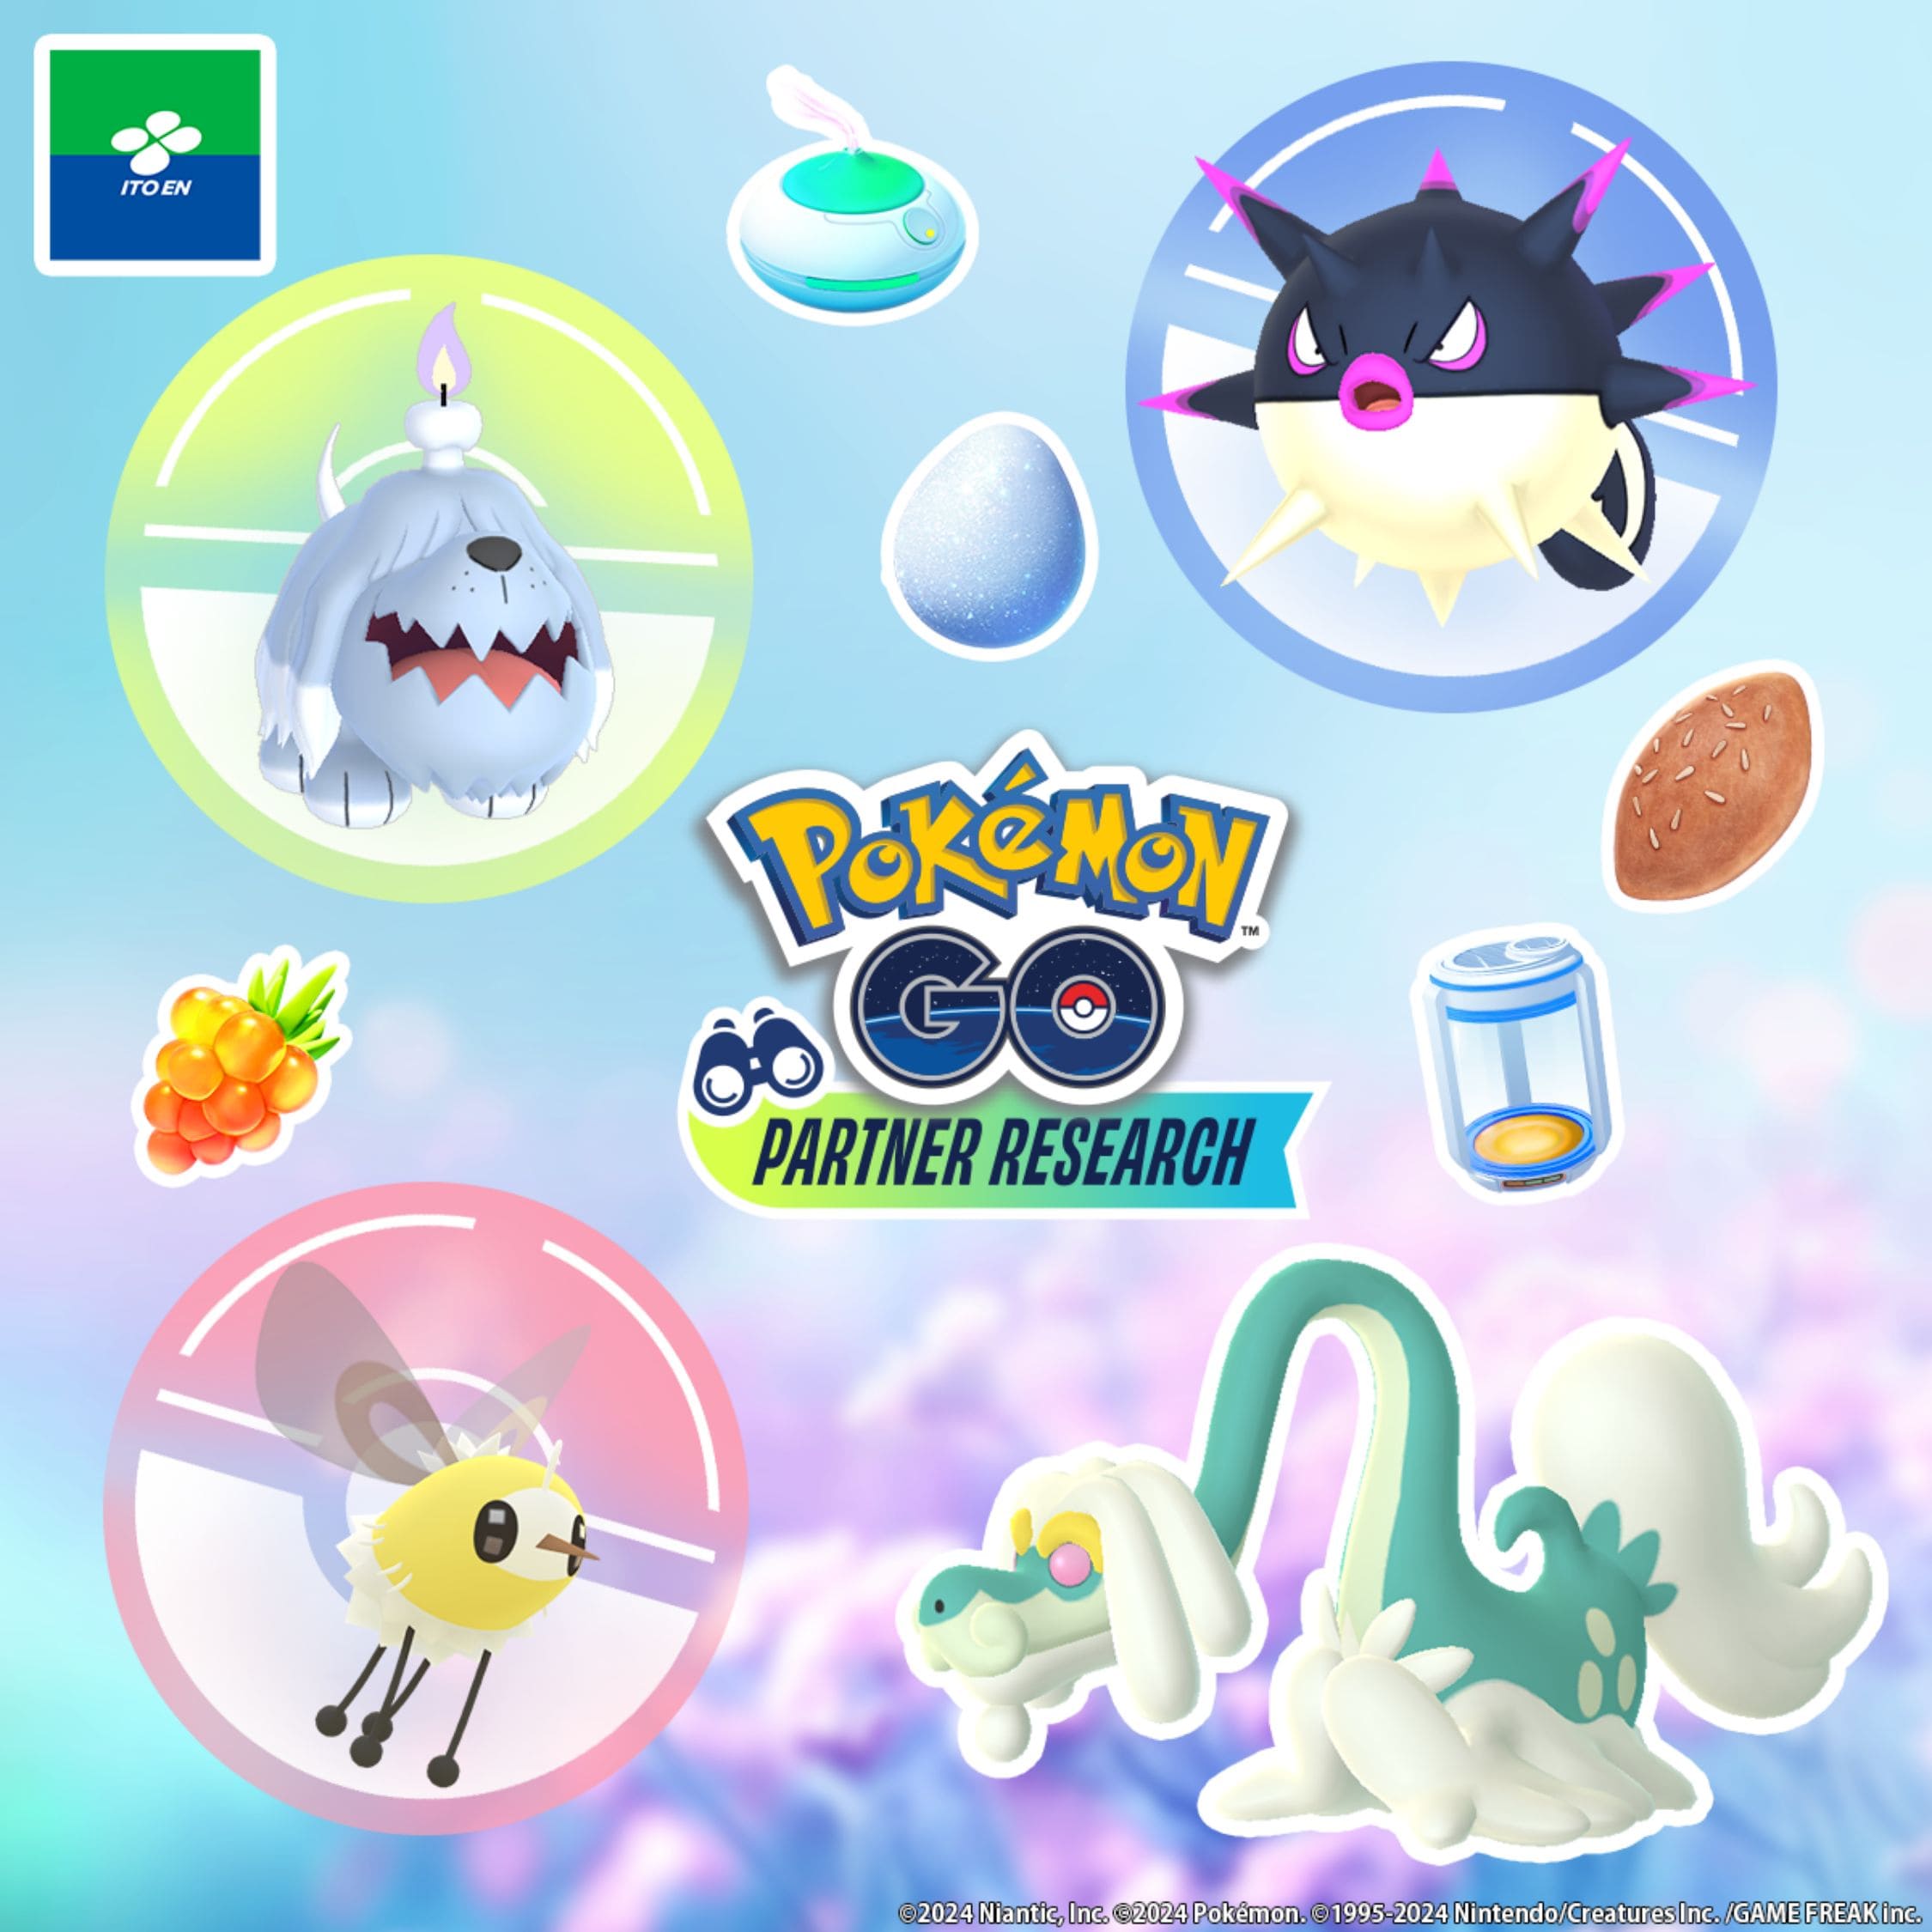 「『Pokémon GO 』 パートナーリサーチ」 参加券を手に入れよう！